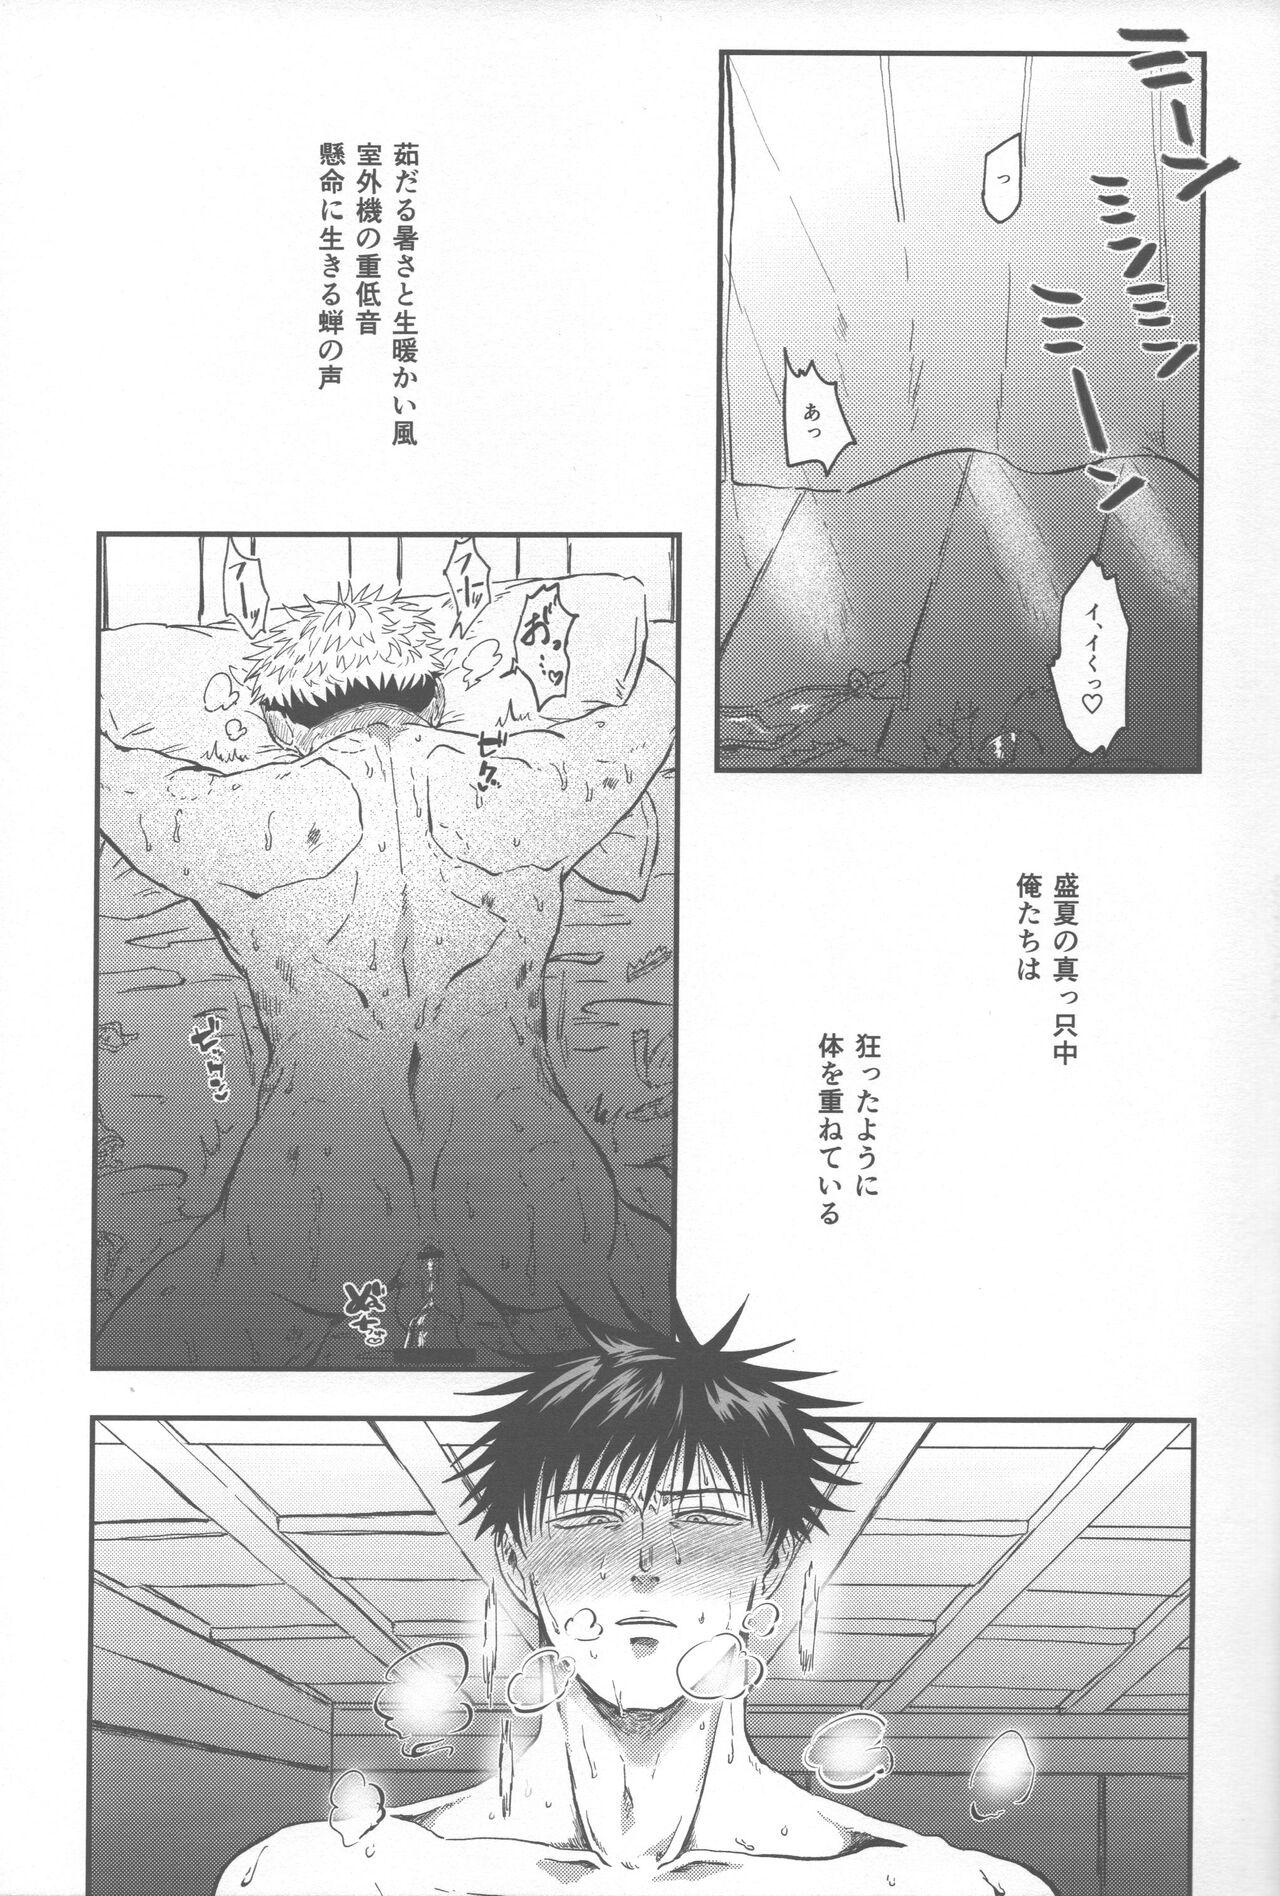 Pigtails Netsu wo obi bu - Jujutsu kaisen She - Page 4